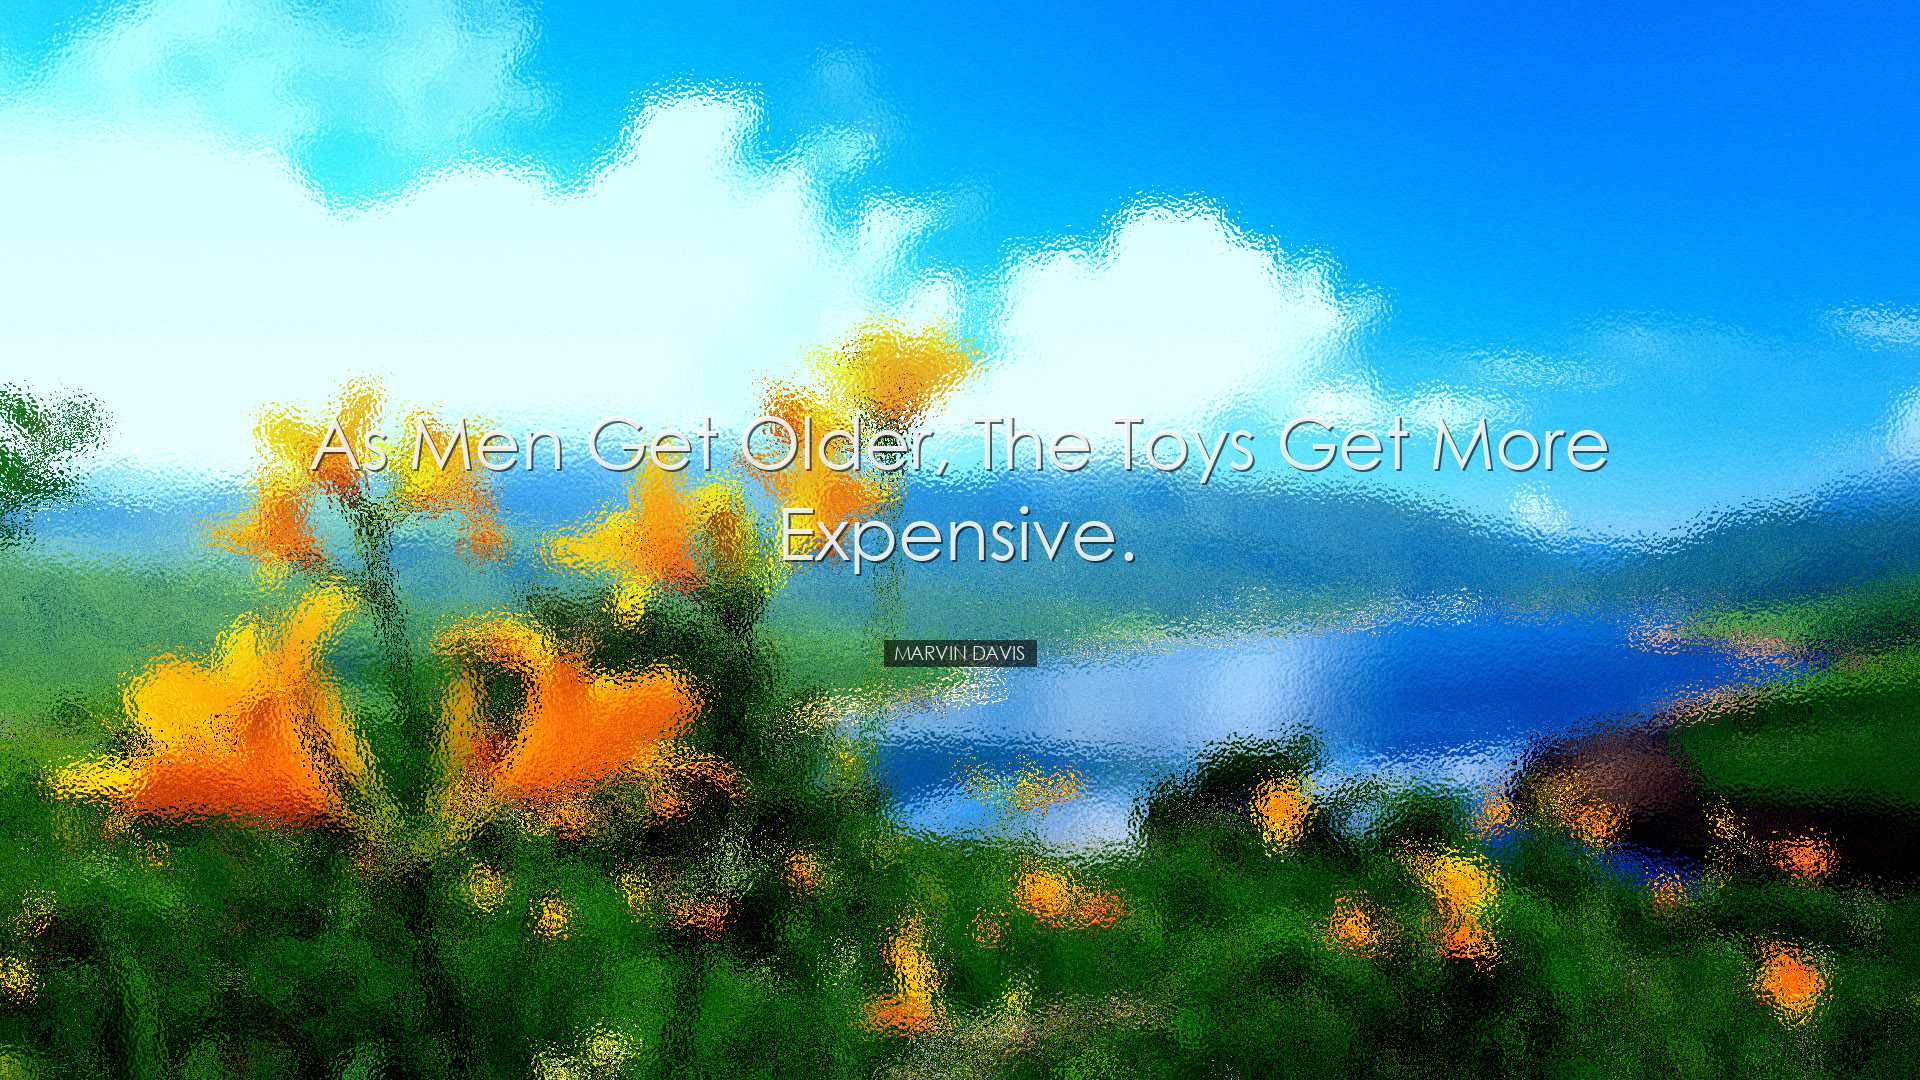 As men get older, the toys get more expensive. - Marvin Davis